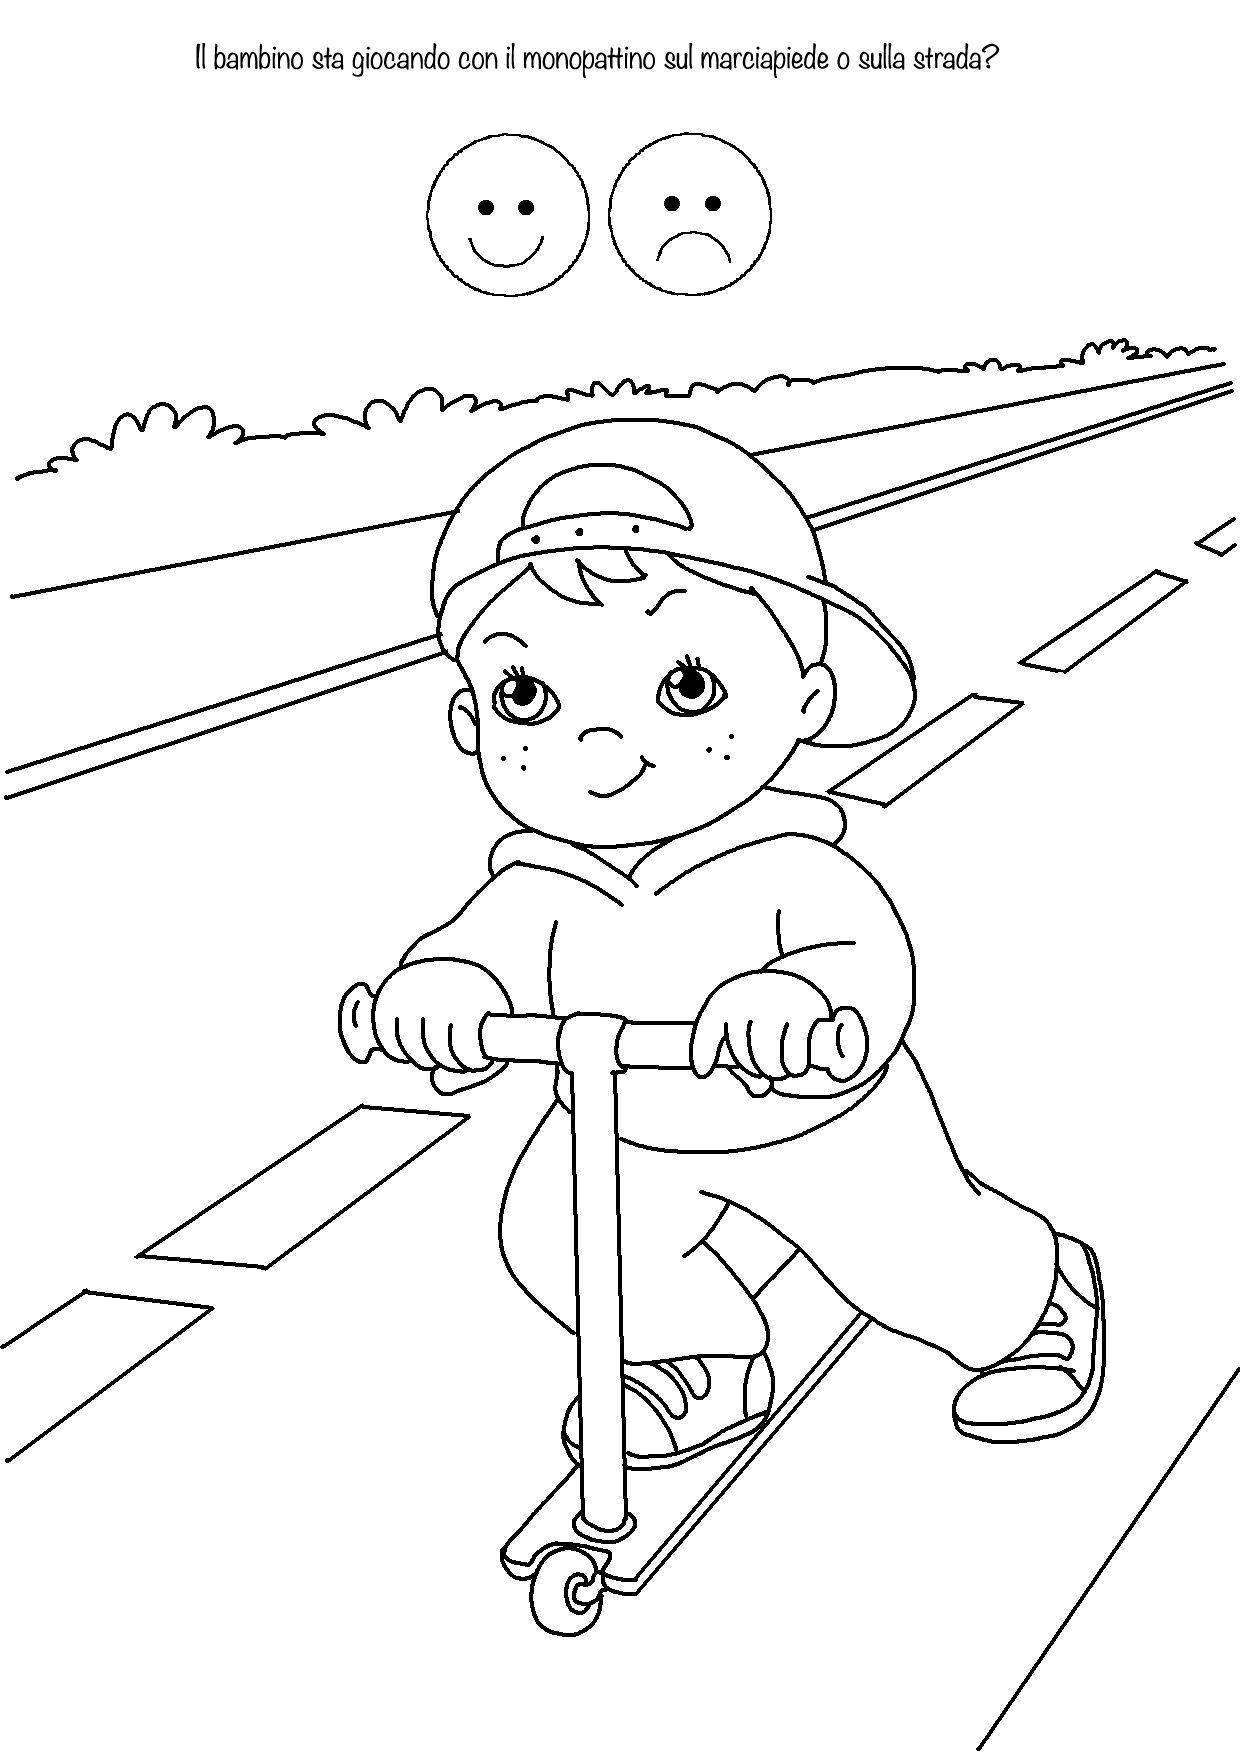 Рисунок на тему пдд 6 класс – конкурс детские рисунки на тему безопасность на дороге. призы проекта «безопасные дороги точка рф»